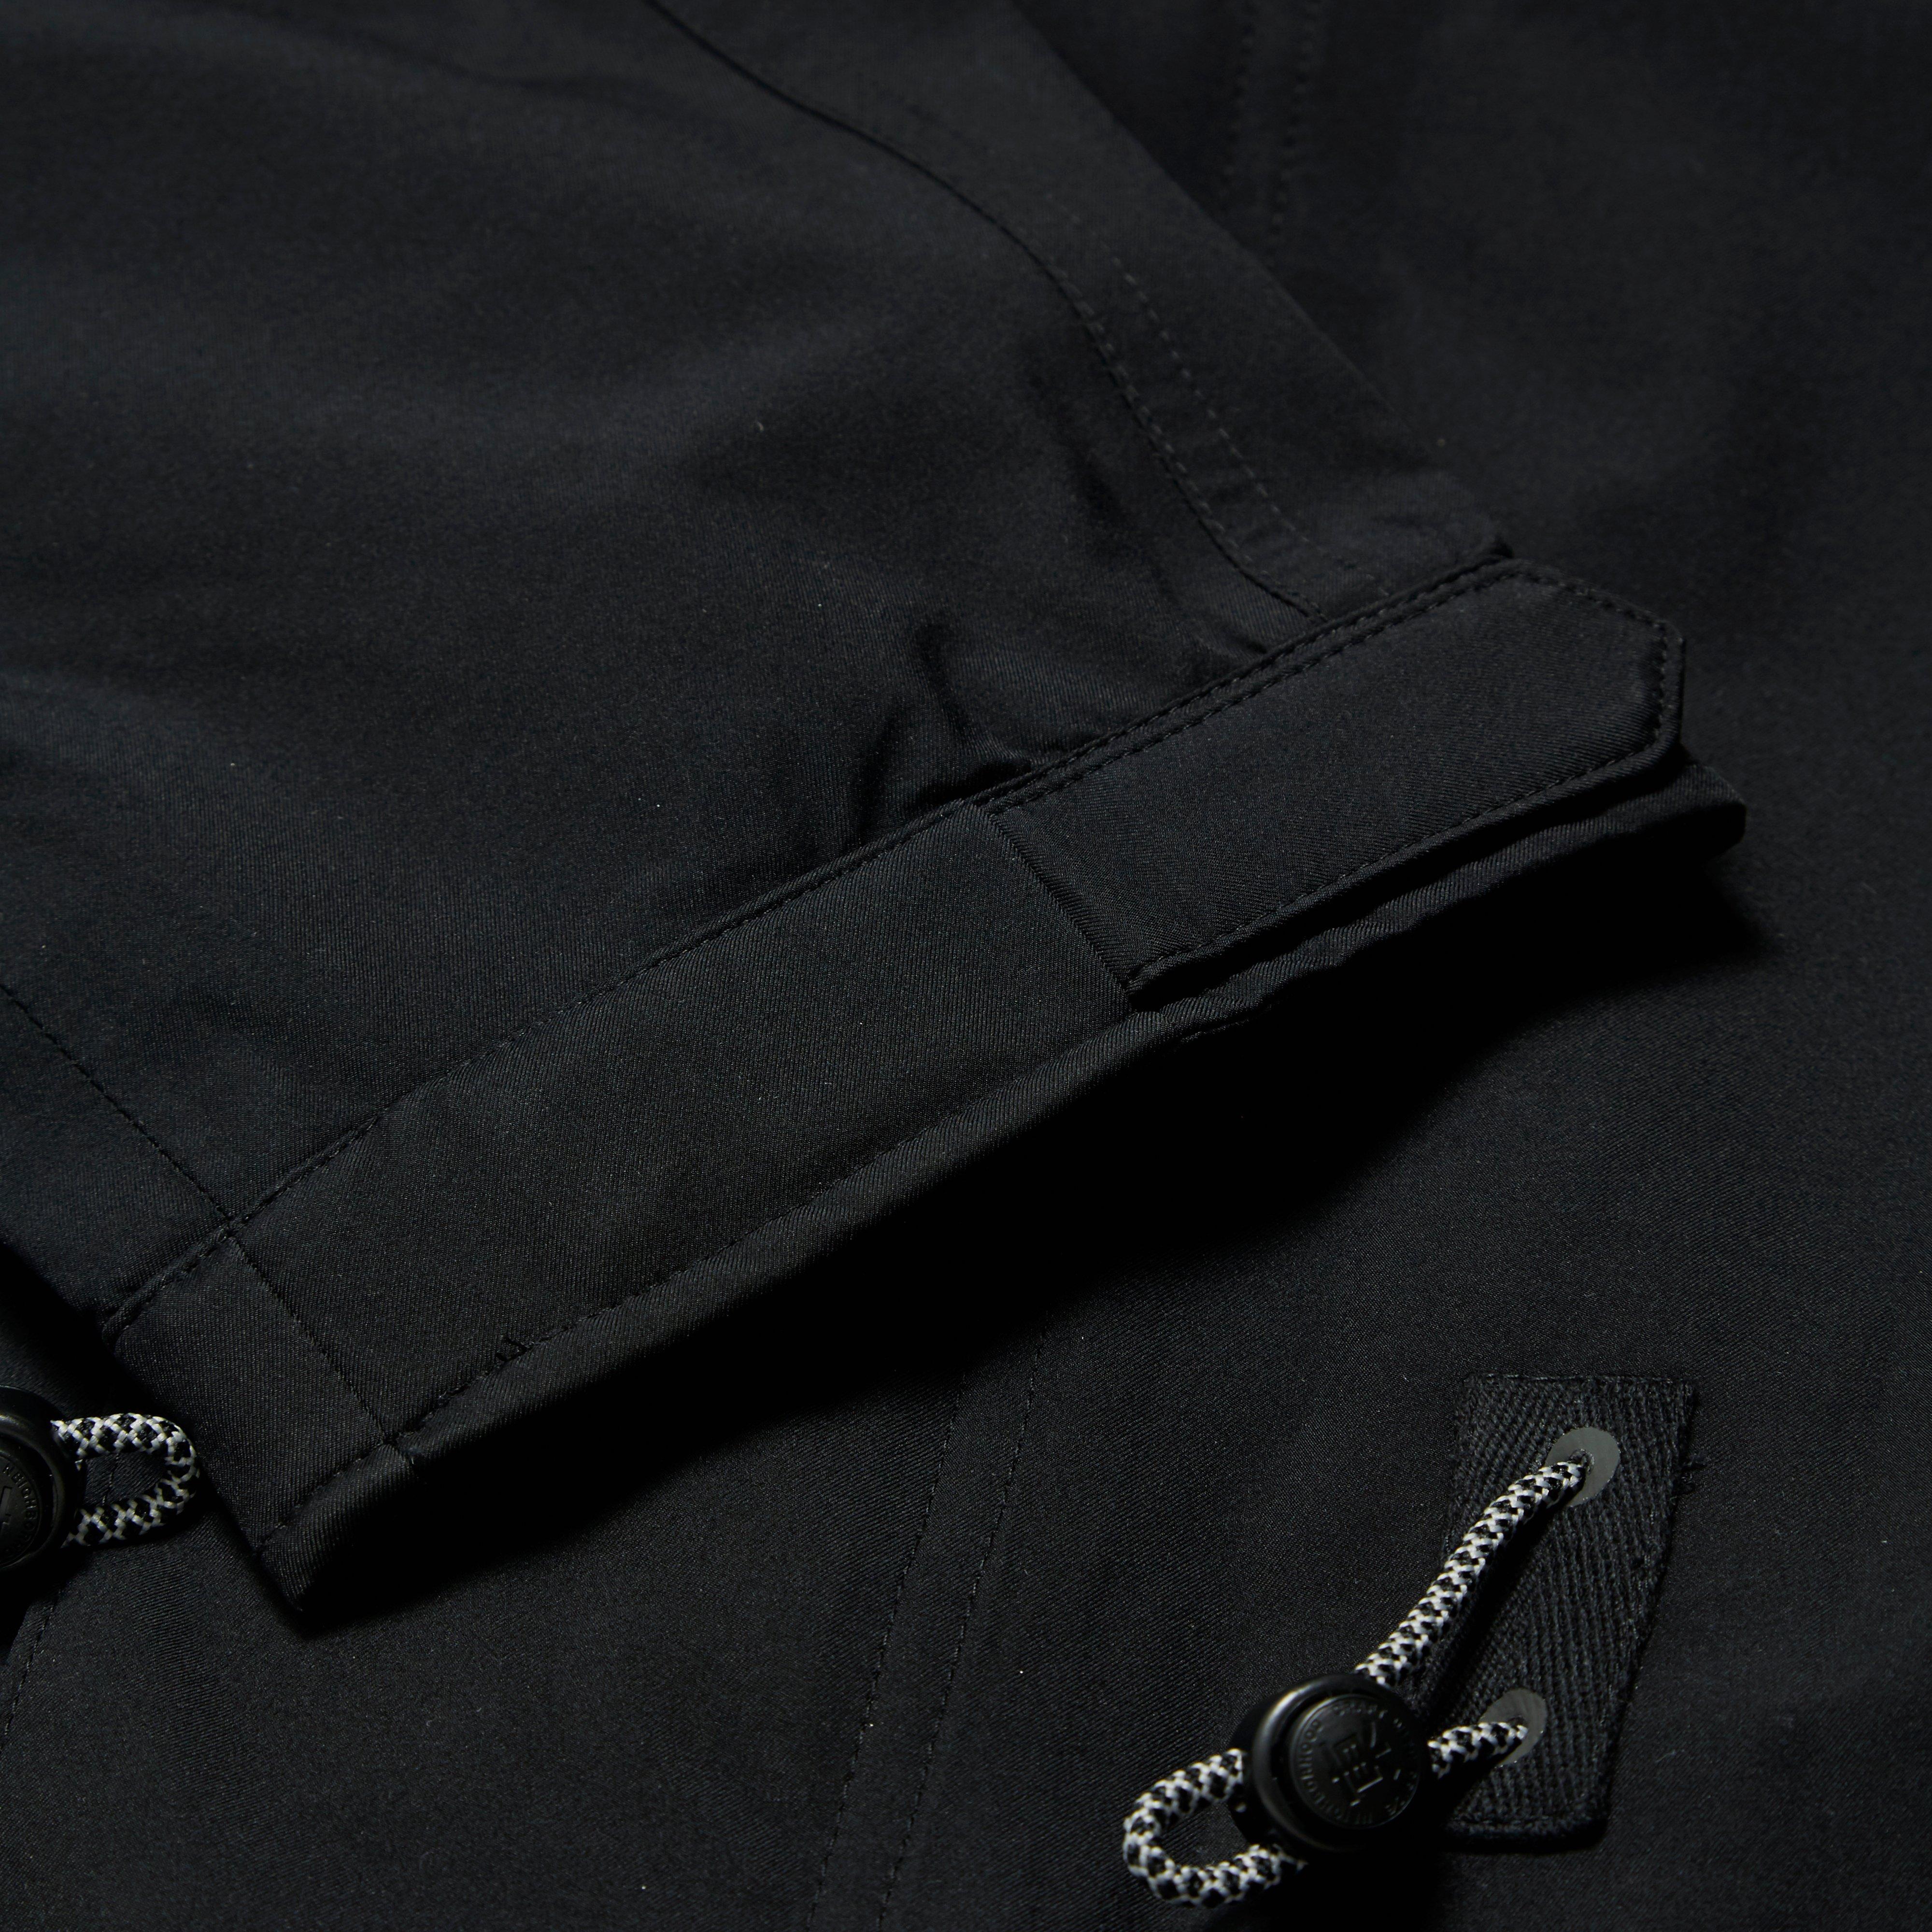 adidas Originals X Neighborhood M-51 Jacket in Black for Men - Lyst